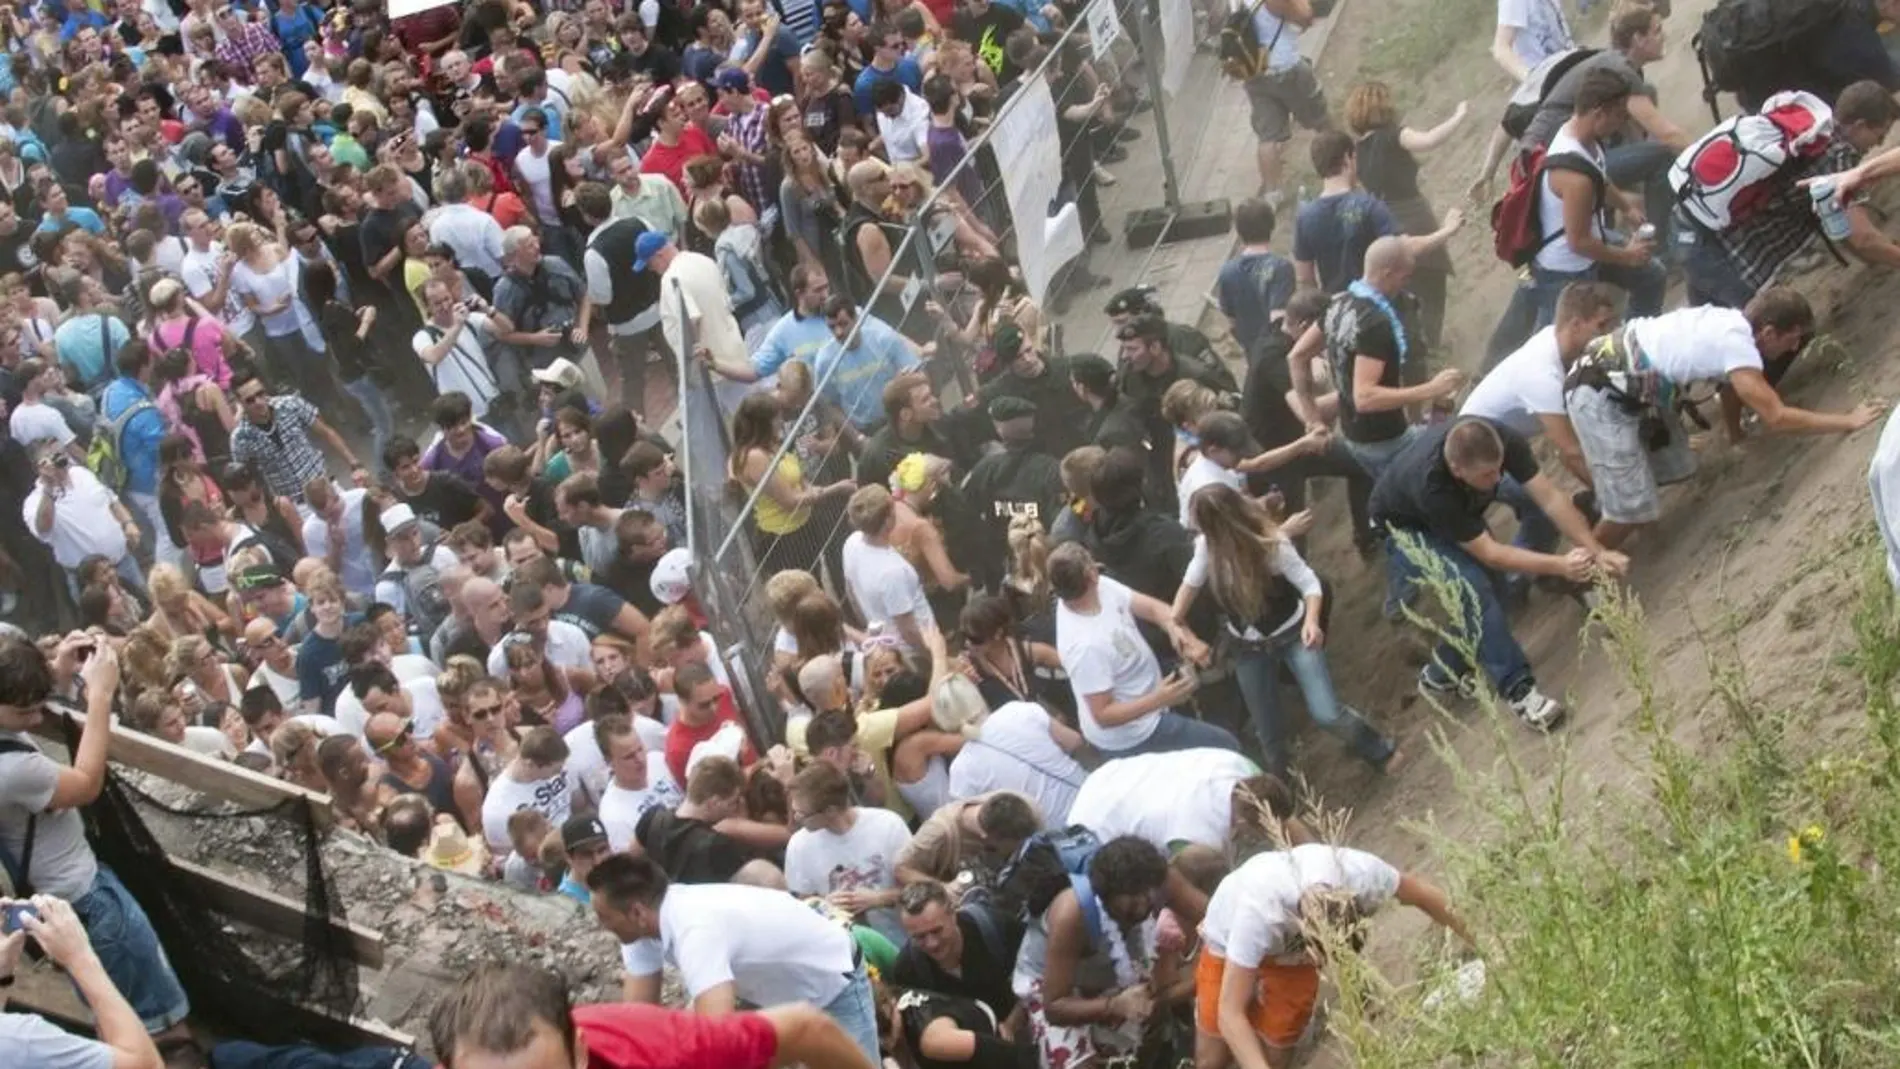 Fotografía de archivo fechada el 24 de julio de 2010 que muestra a varias personas mientras intentan abandonar un túnel durante una estampida en la tragedia de la Loveparade de 2010, en Duisburgo